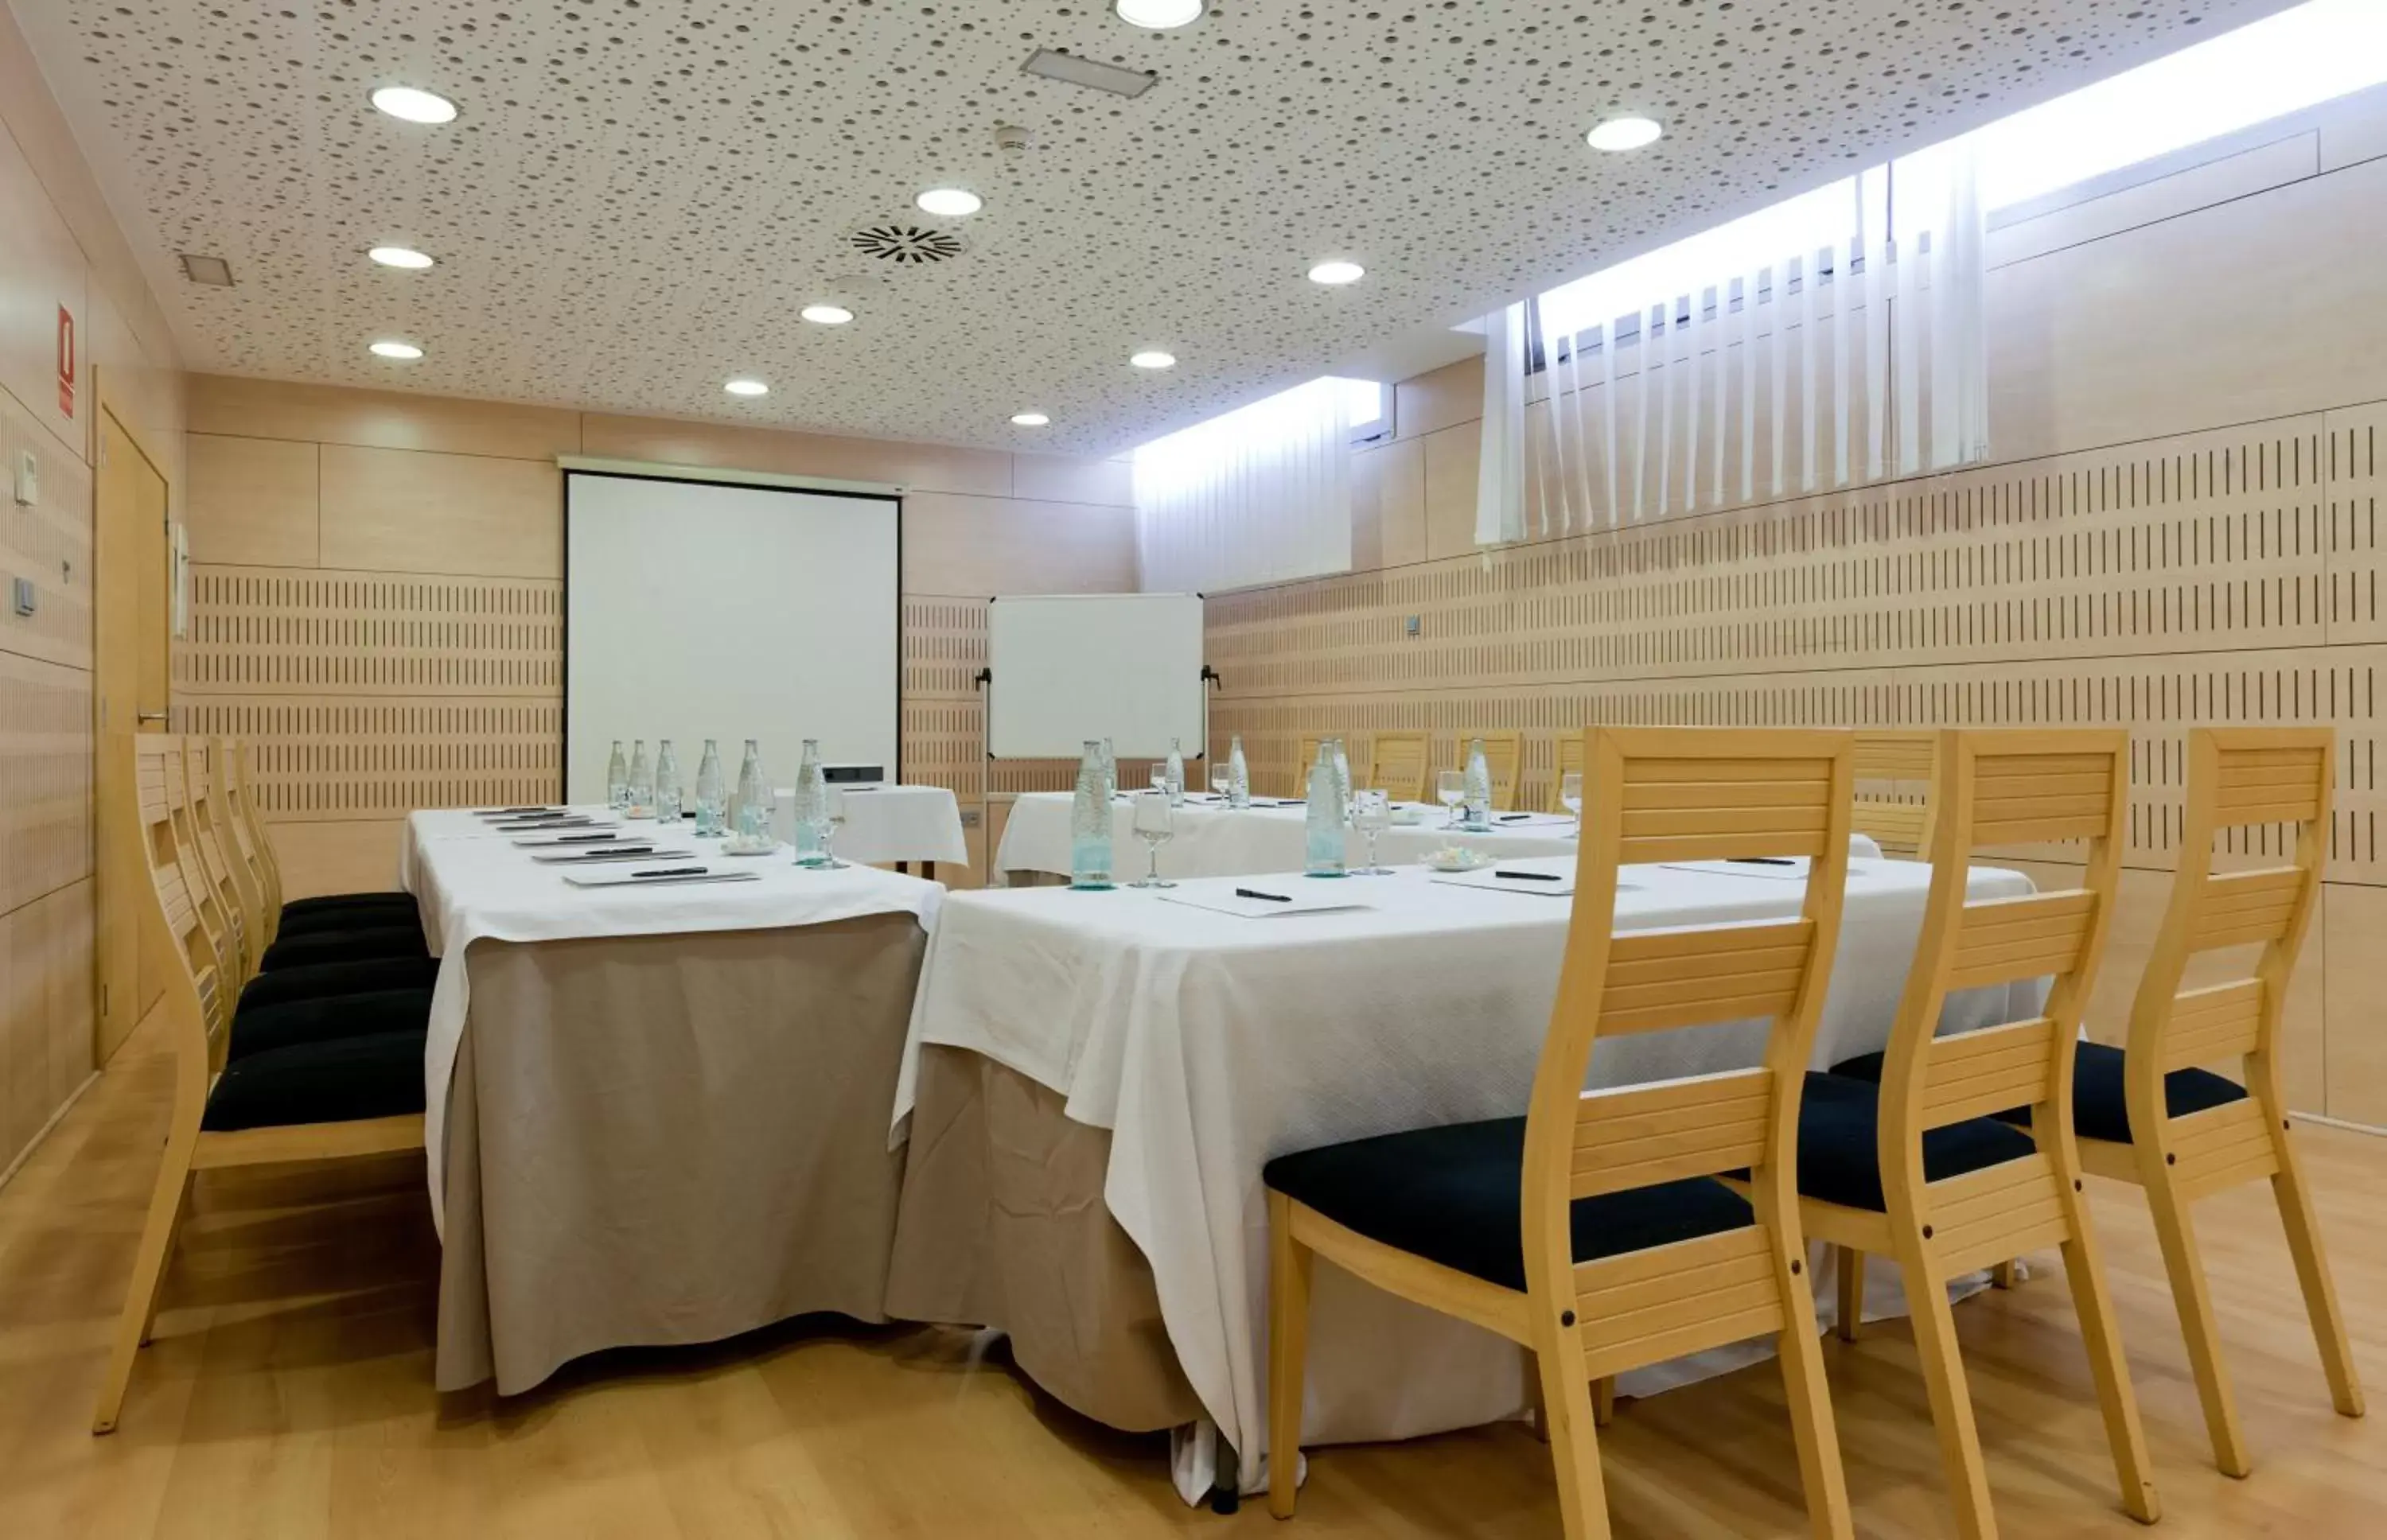 Meeting/conference room, Banquet Facilities in Daniya Alicante